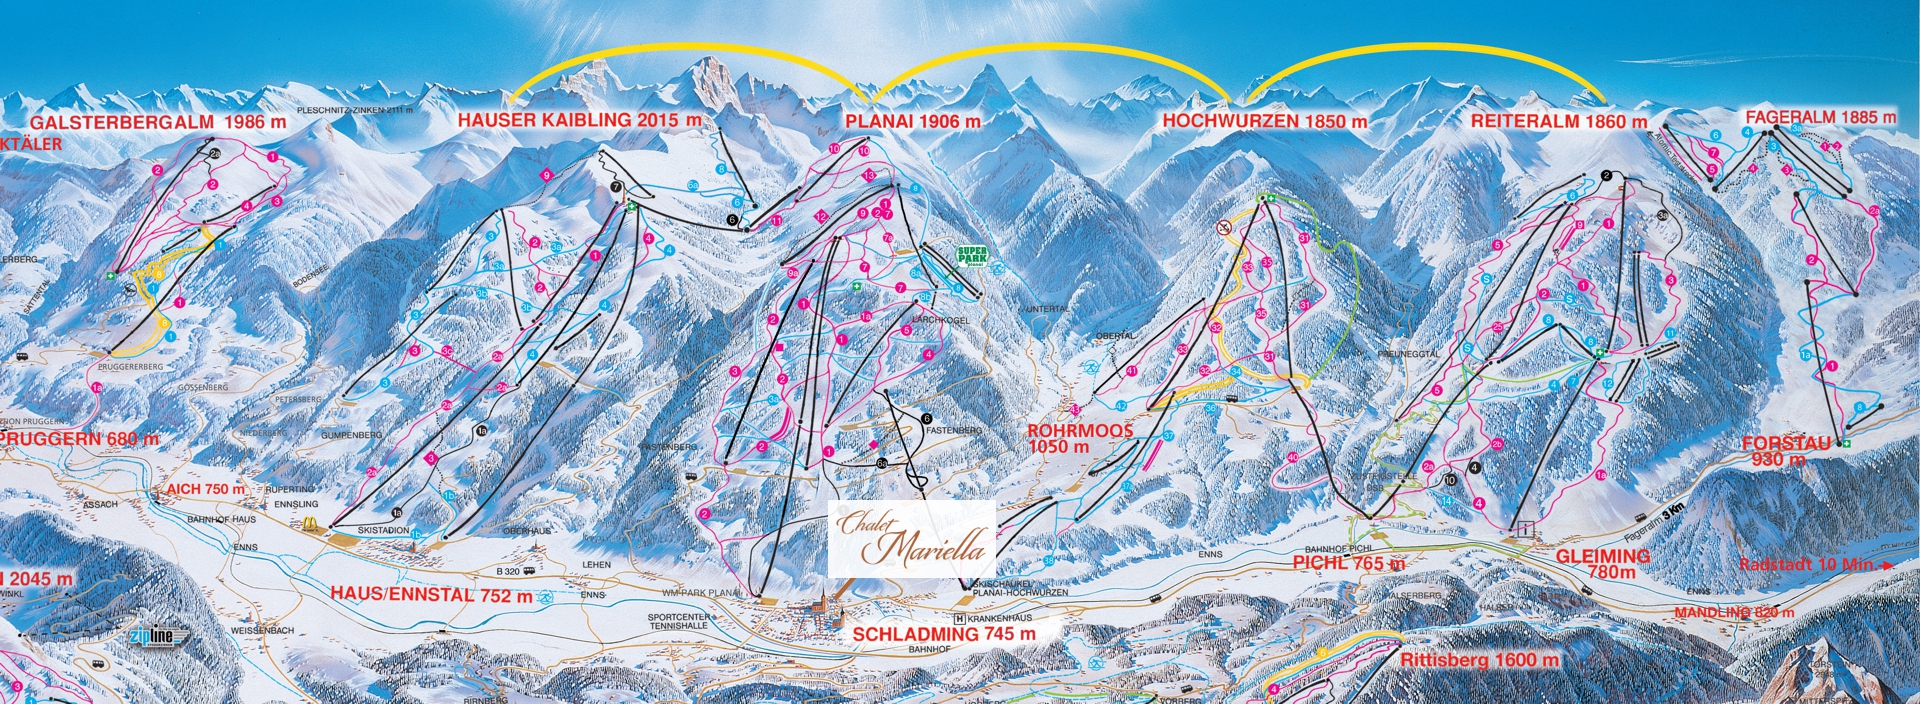 4-Berge Skischaukel